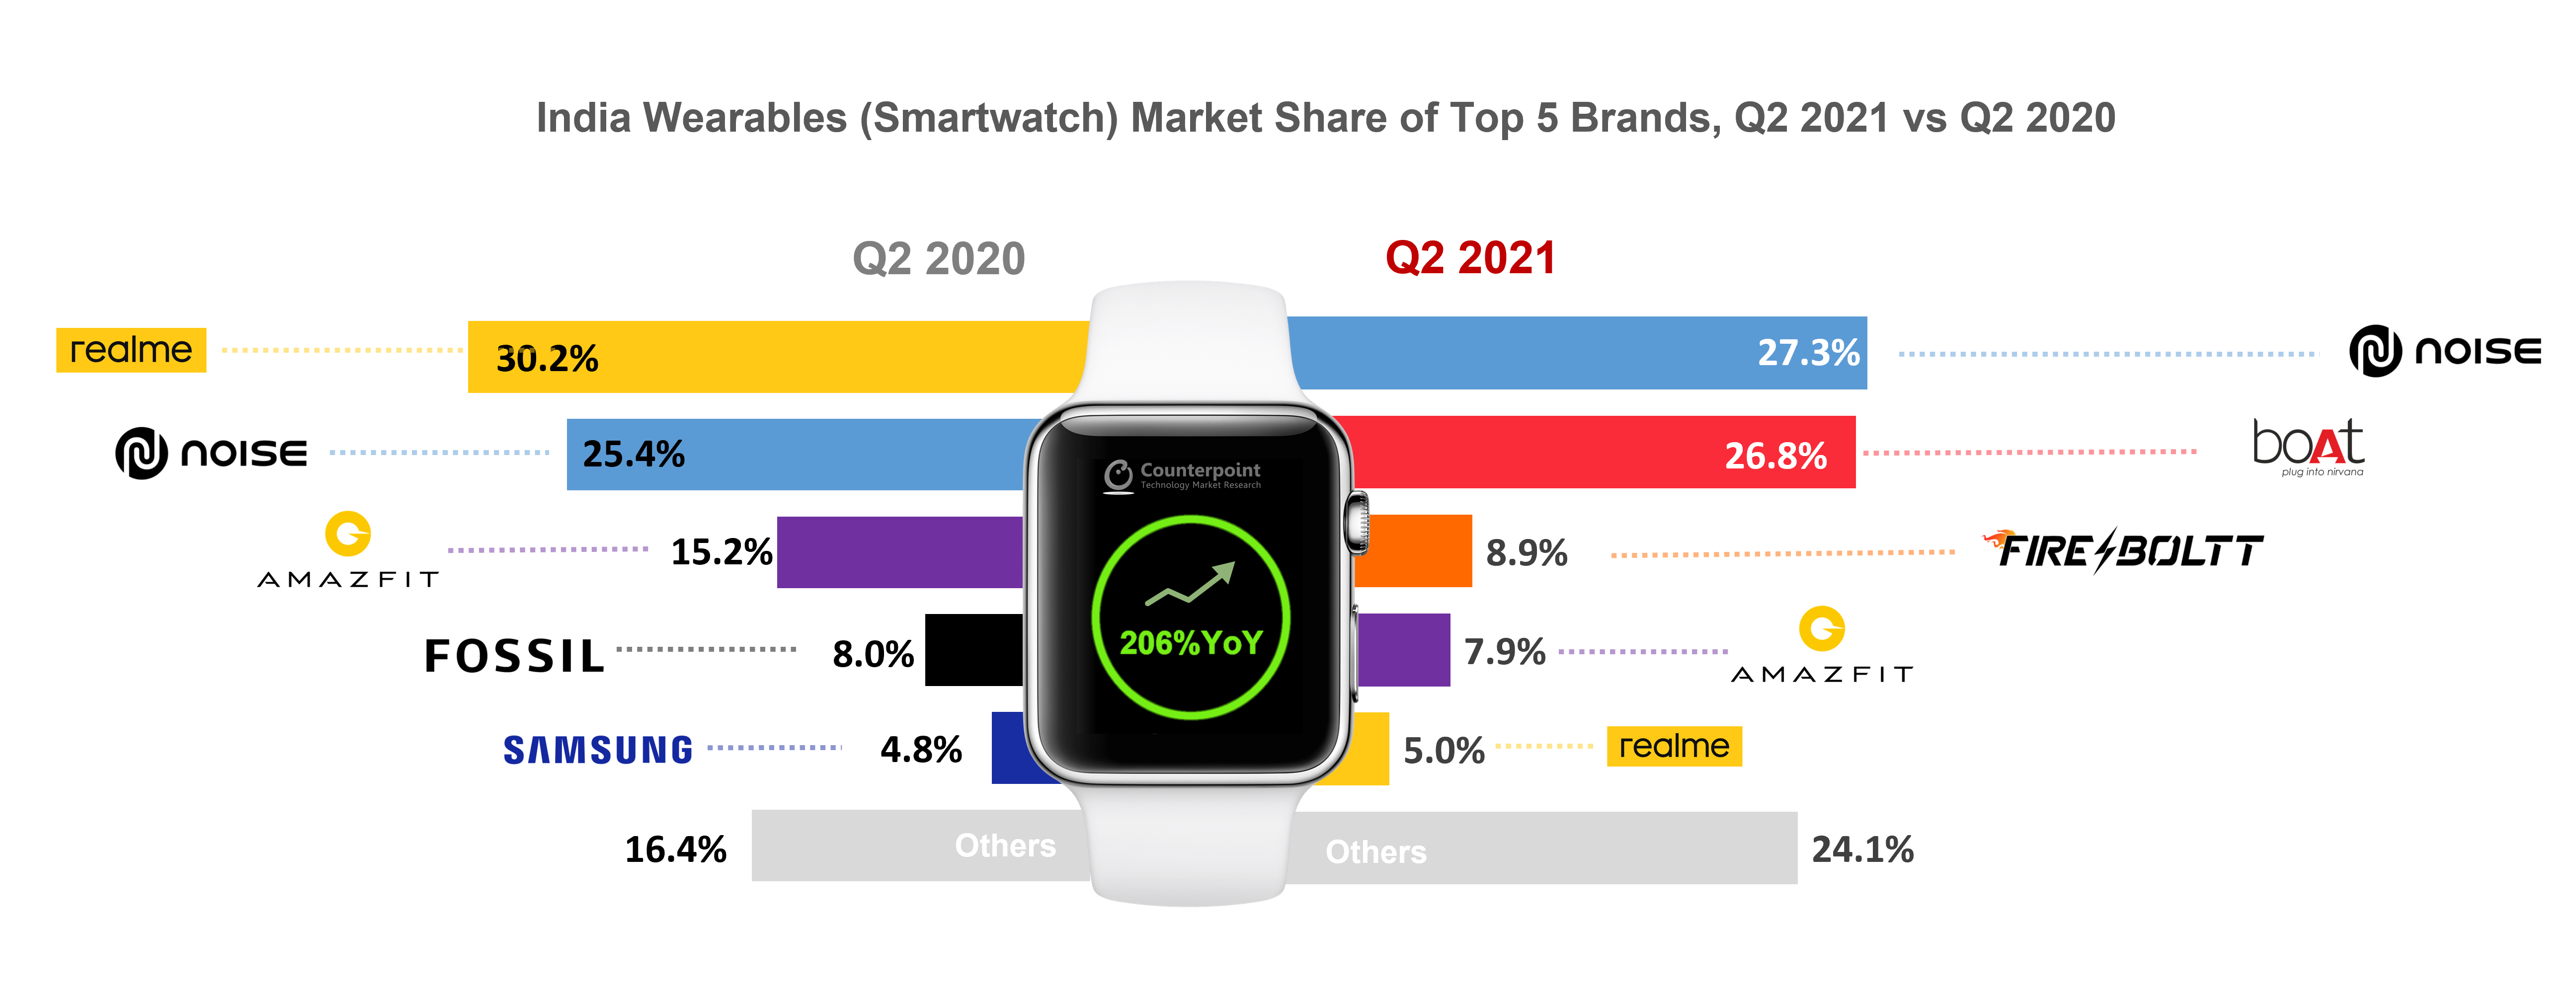 印度衣物(Smartwatch)市场份额的前5名Brands, Q2 2021 vs Q2 2020